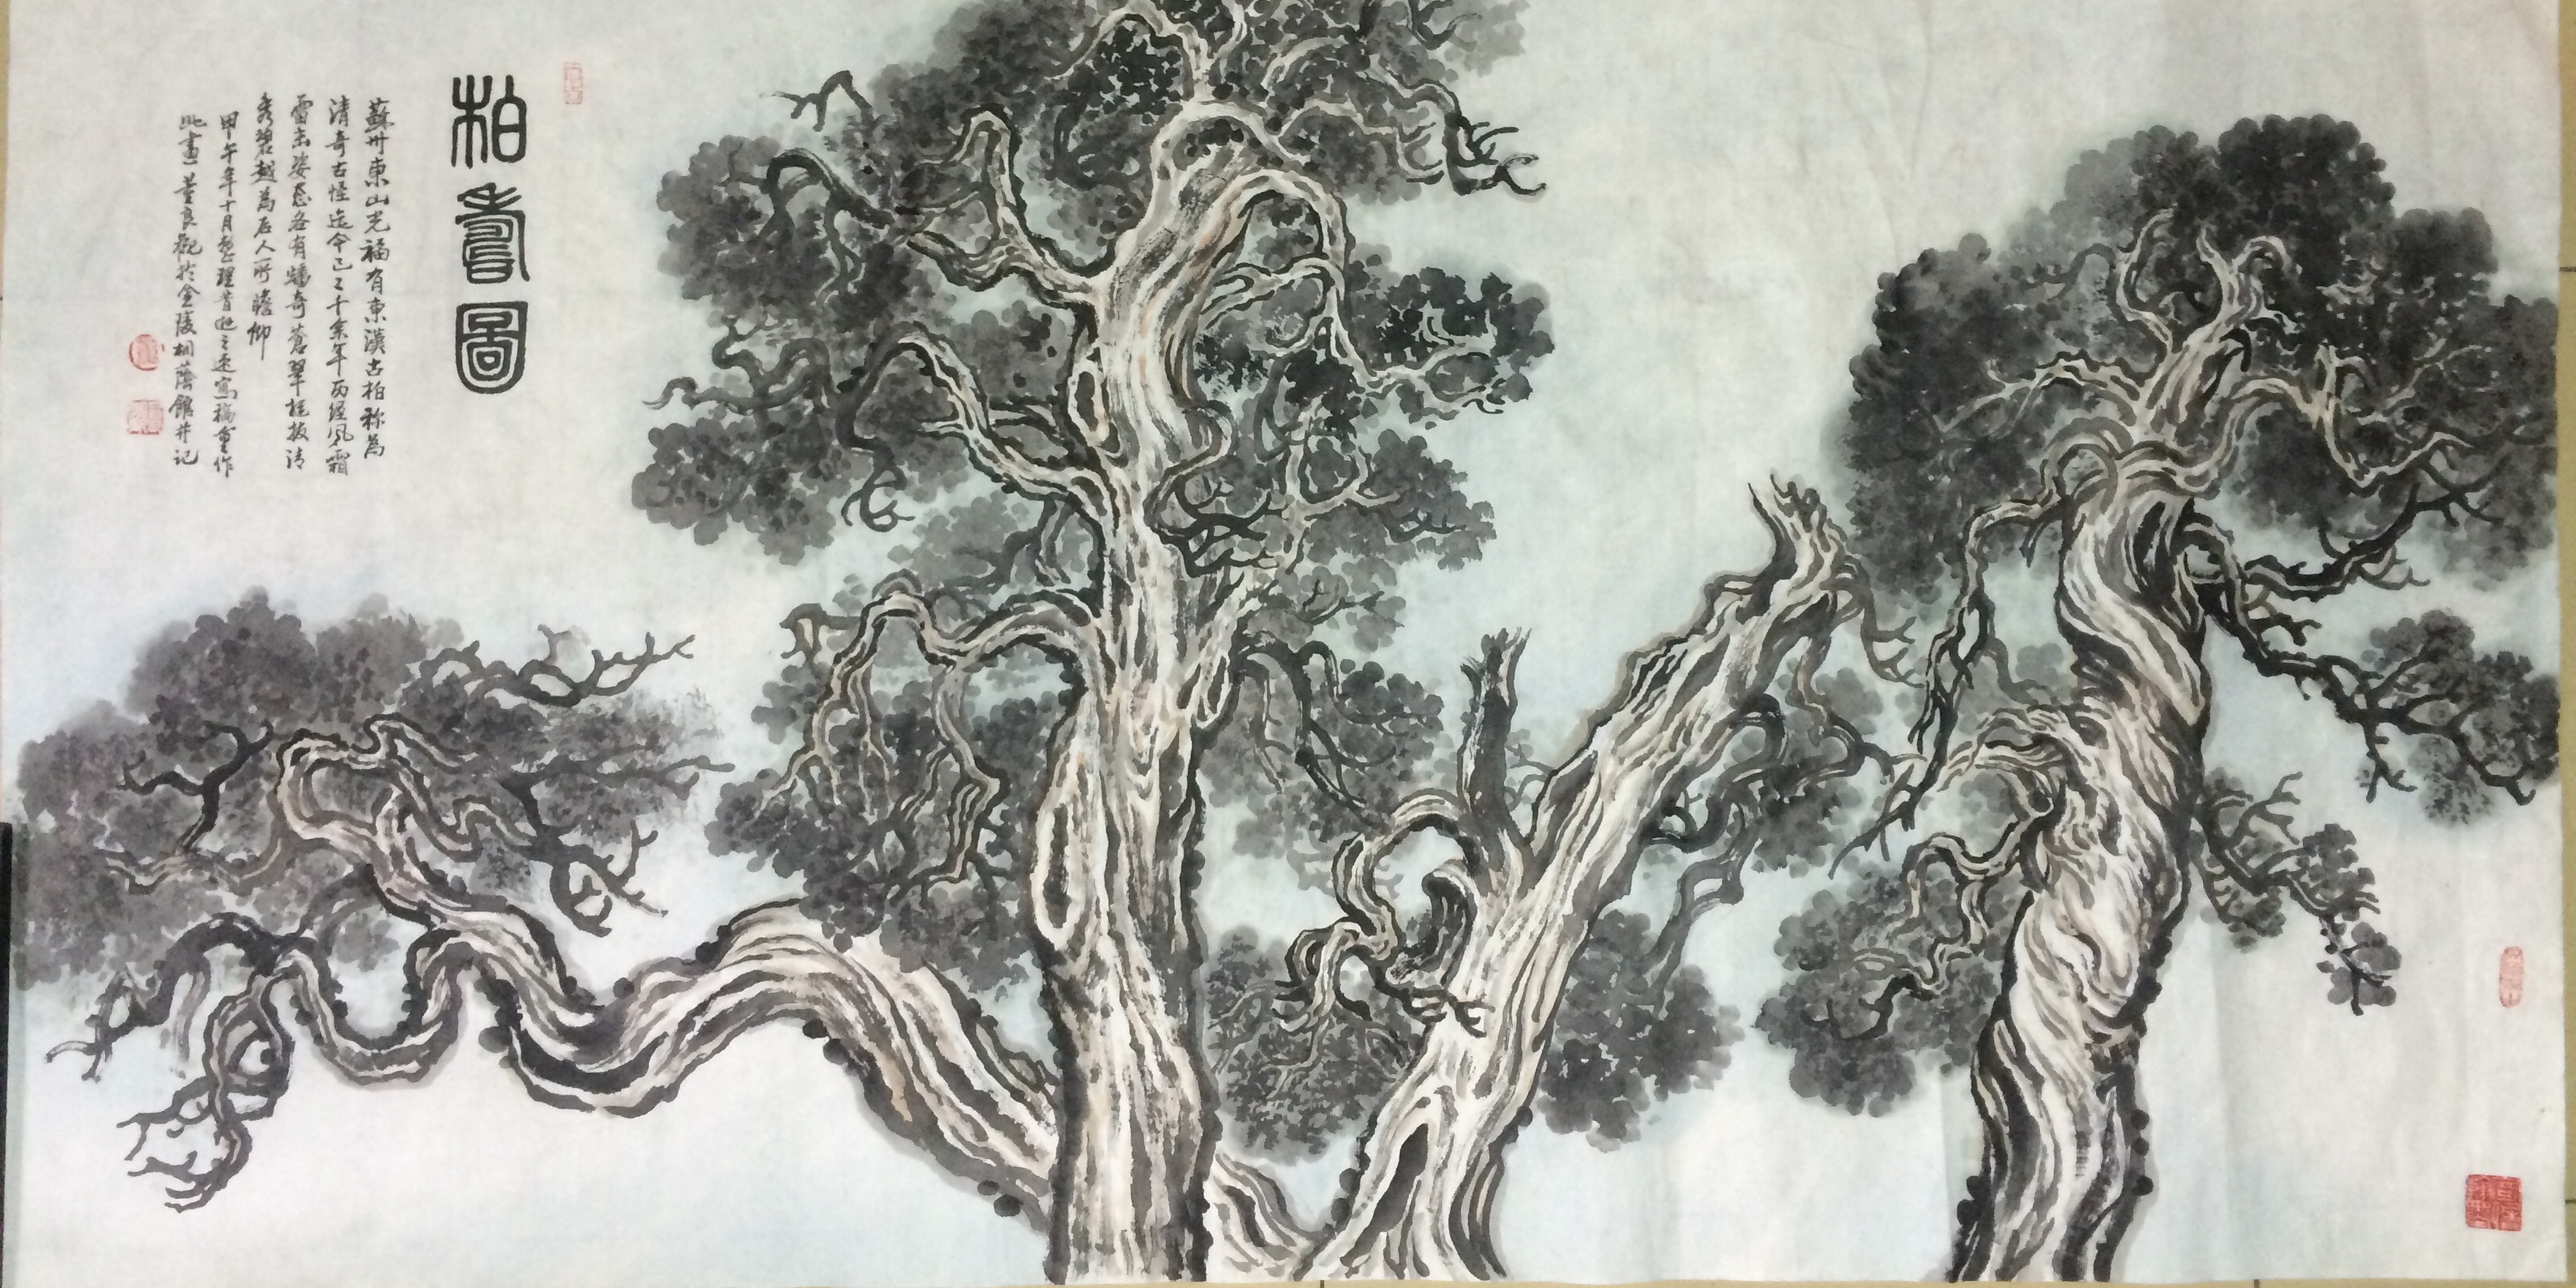 作品名称 古柏树 作品分类 国画 售价 议价 年代 2014 尺寸 138